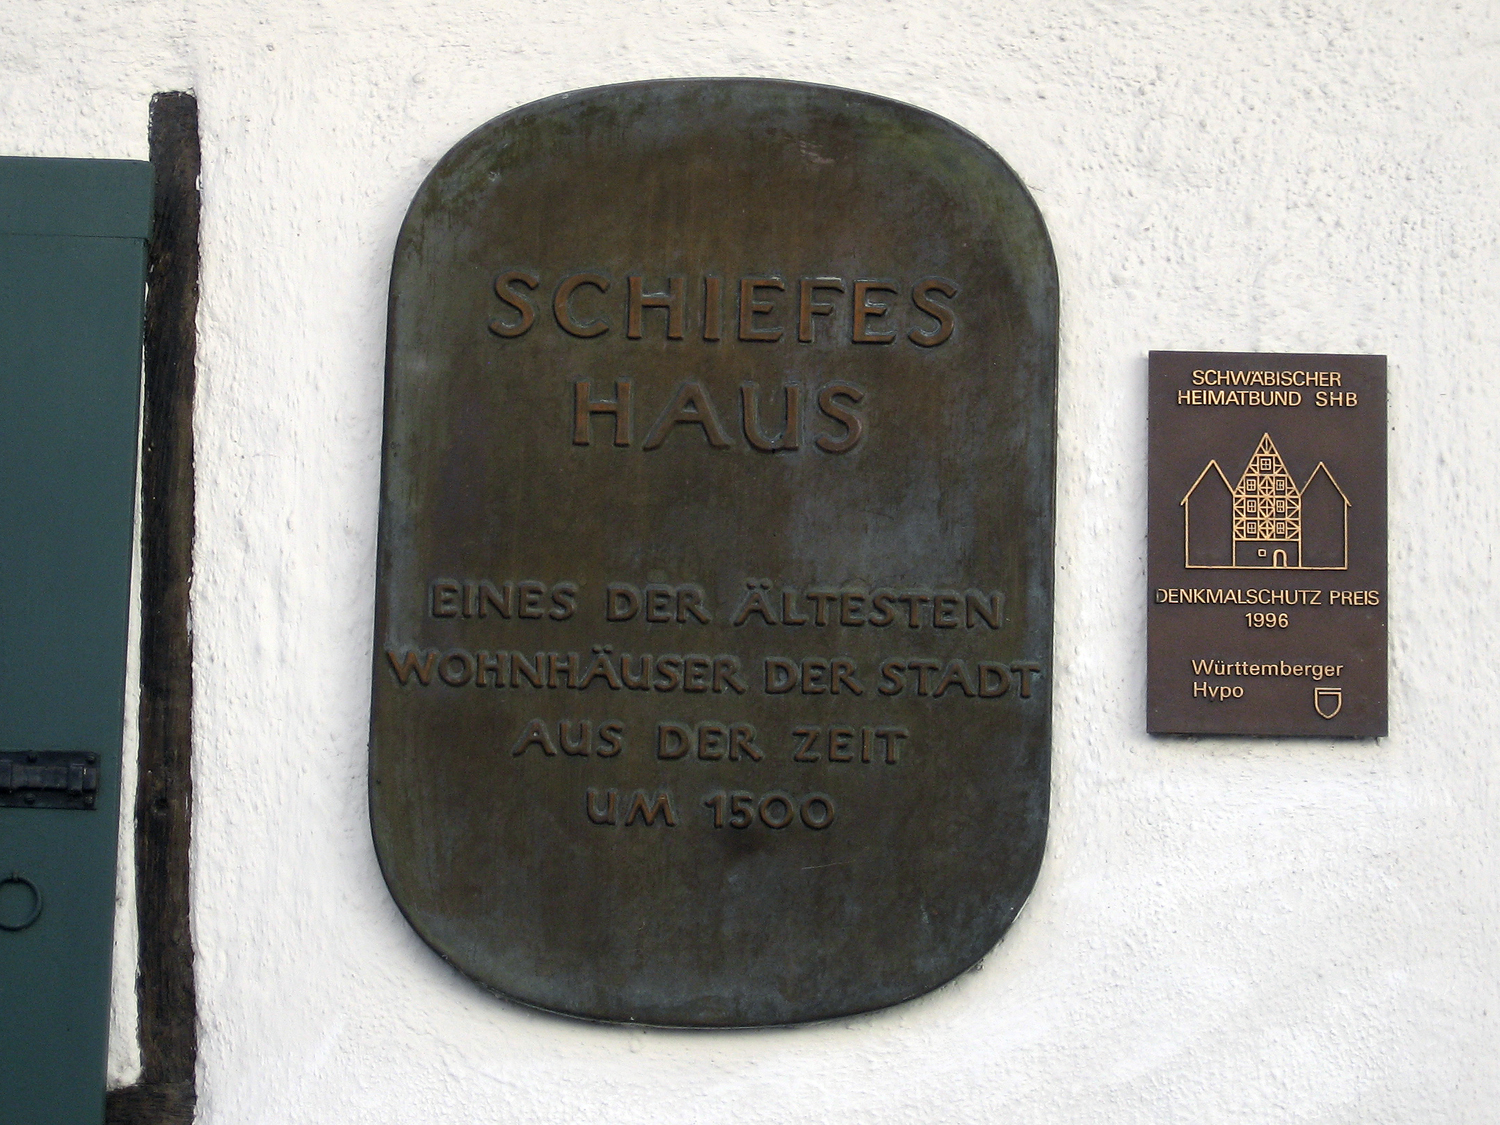 Bild 2 "Schiefes Haus" in Ulm